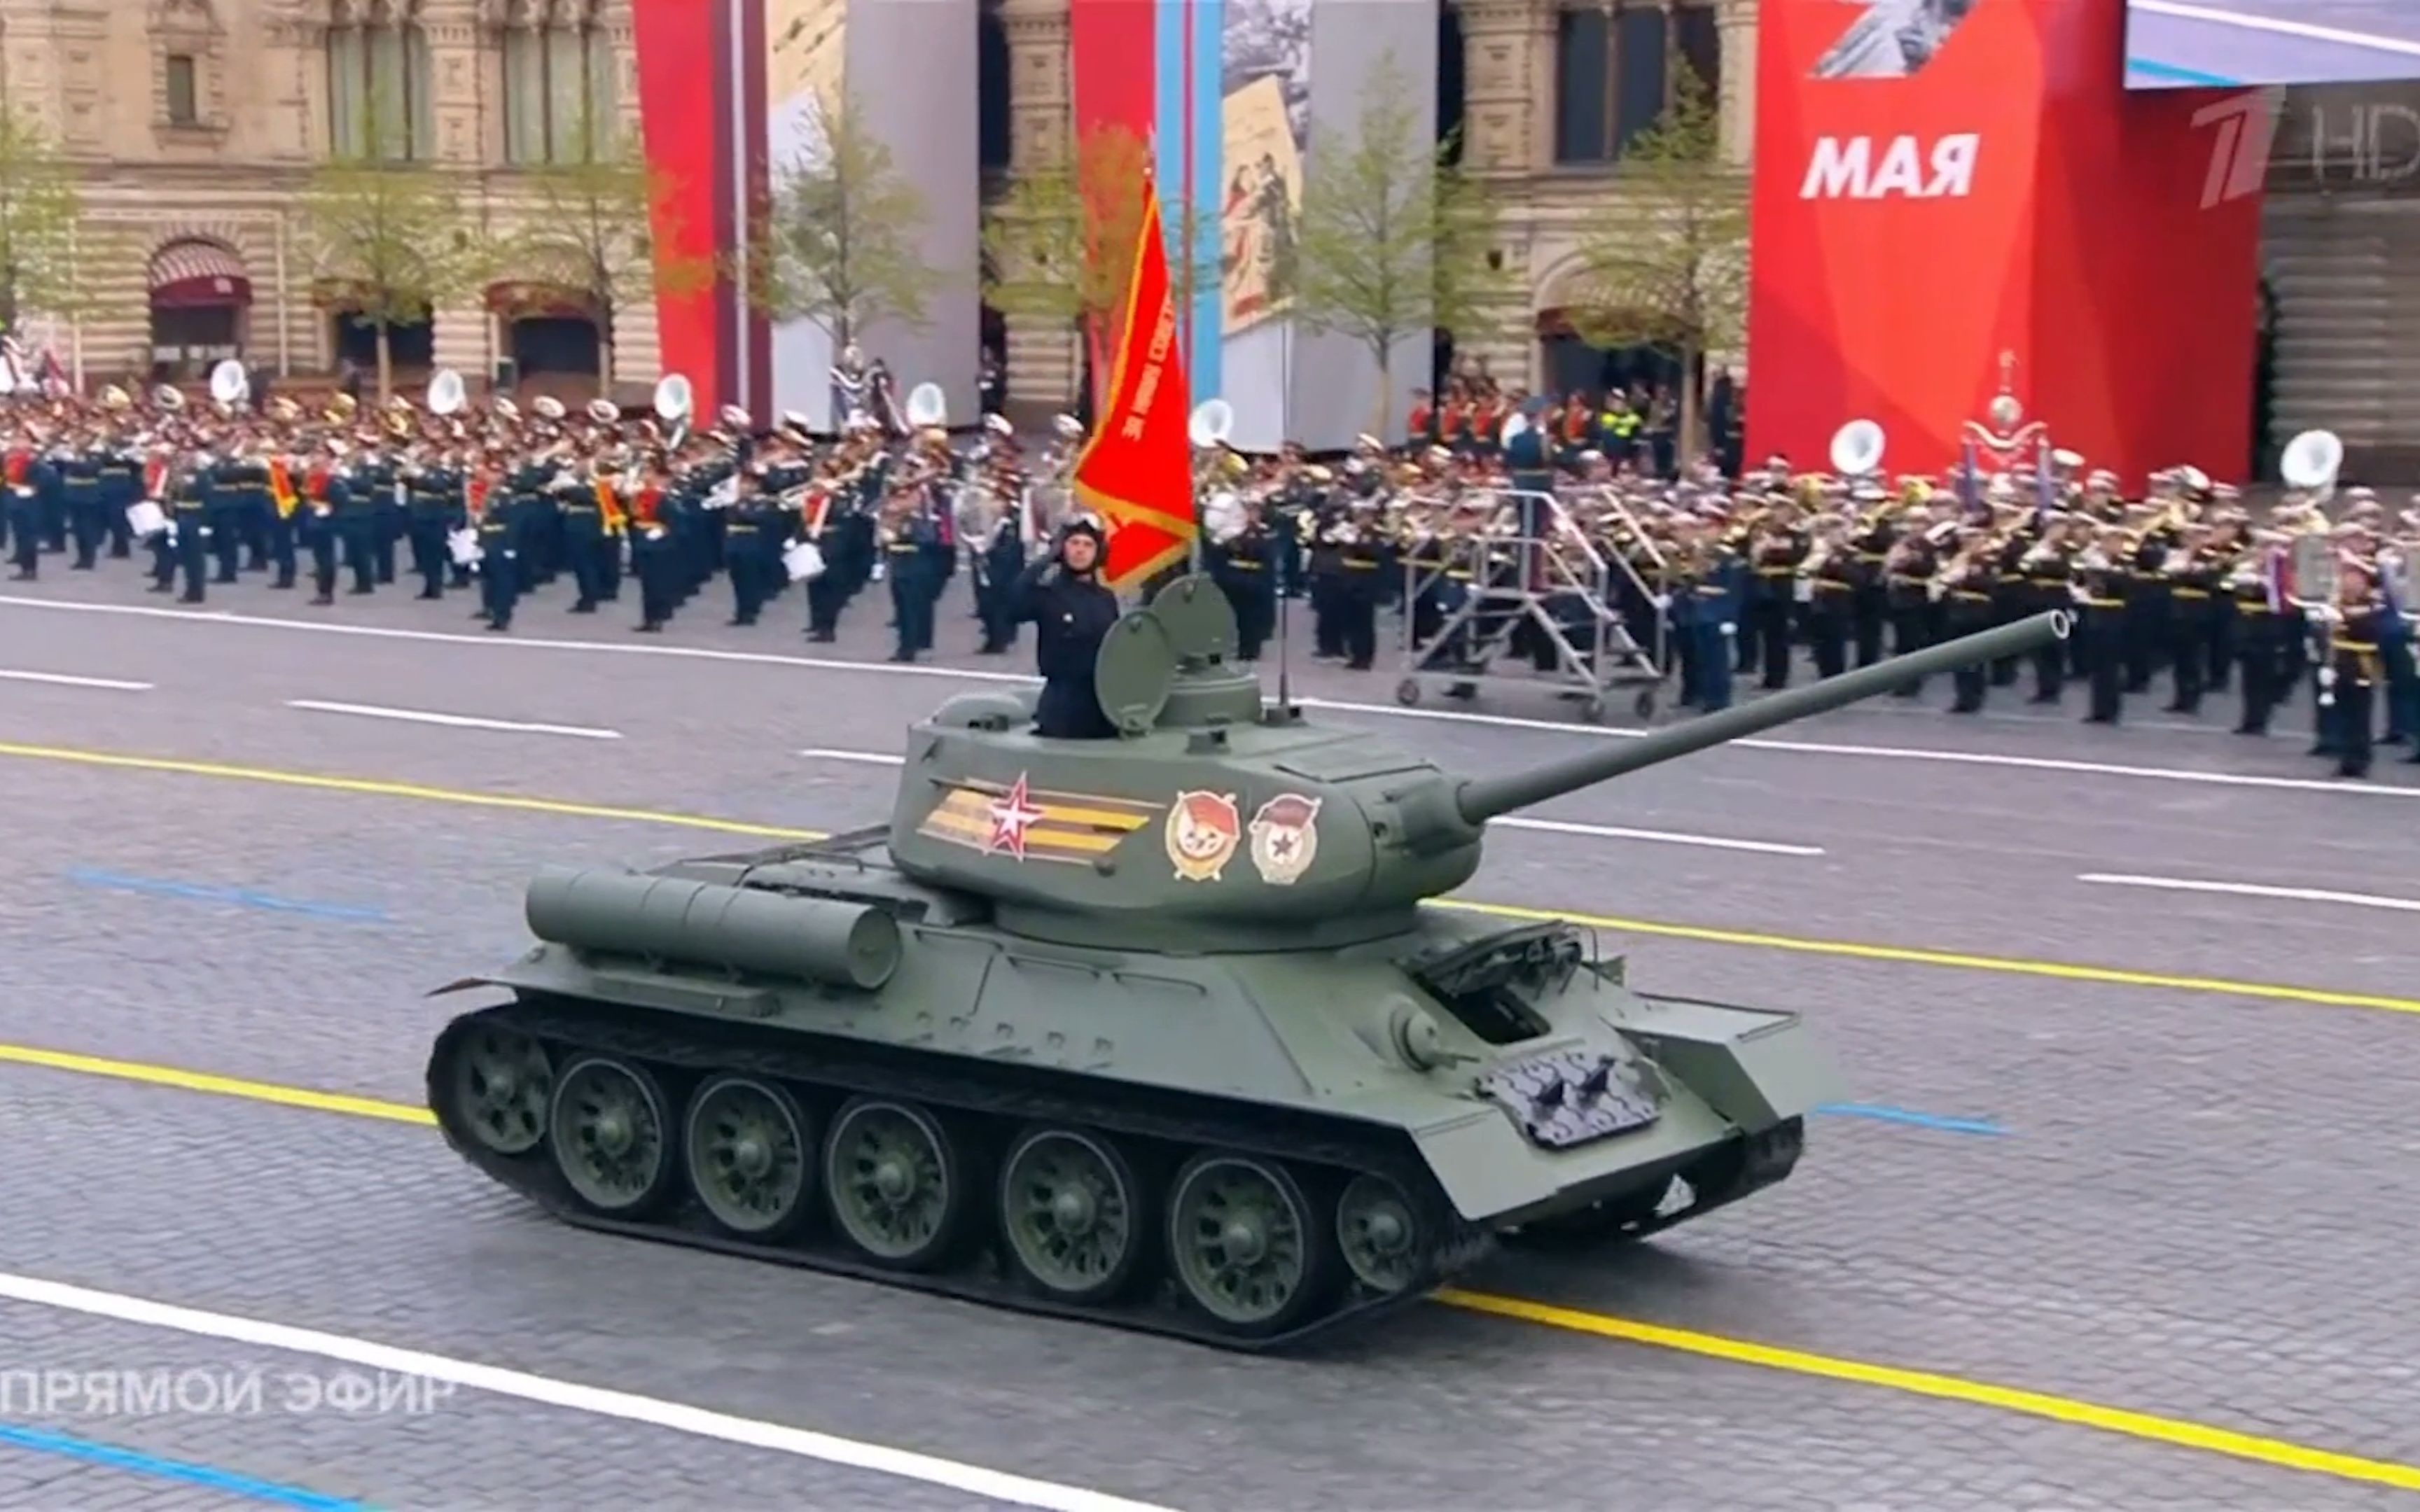 俄罗斯举行红场阅兵总彩排